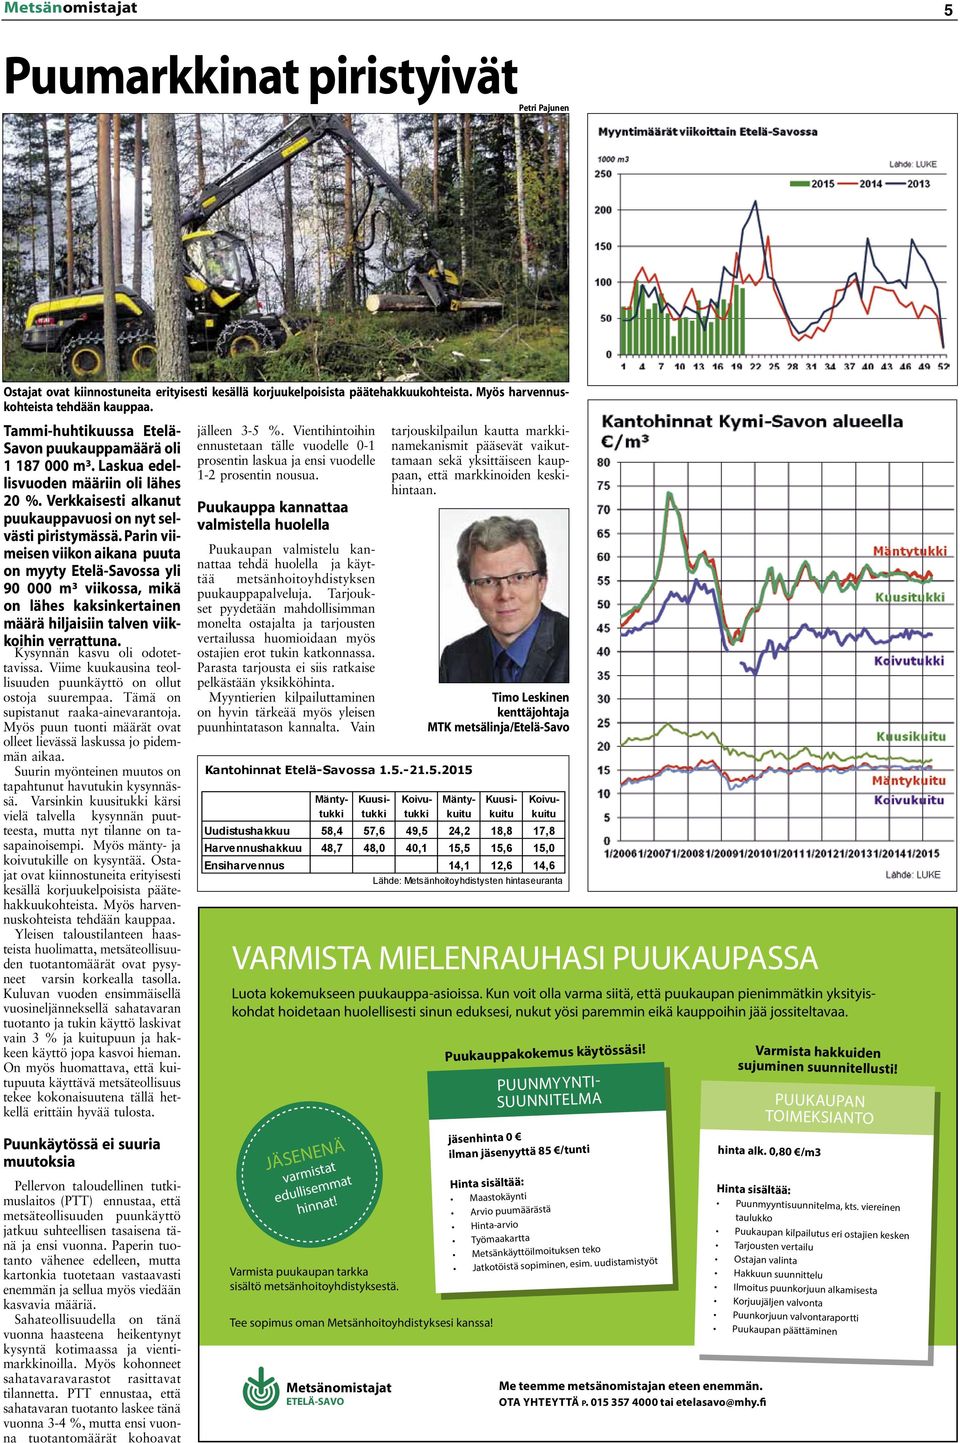 Parin viimeisen viikon aikana puuta on myyty Etelä-Savossa yli 90 000 m³ viikossa, mikä on lähes kaksinkertainen määrä hiljaisiin talven viikkoihin verrattuna. Kysynnän kasvu oli odotettavissa.